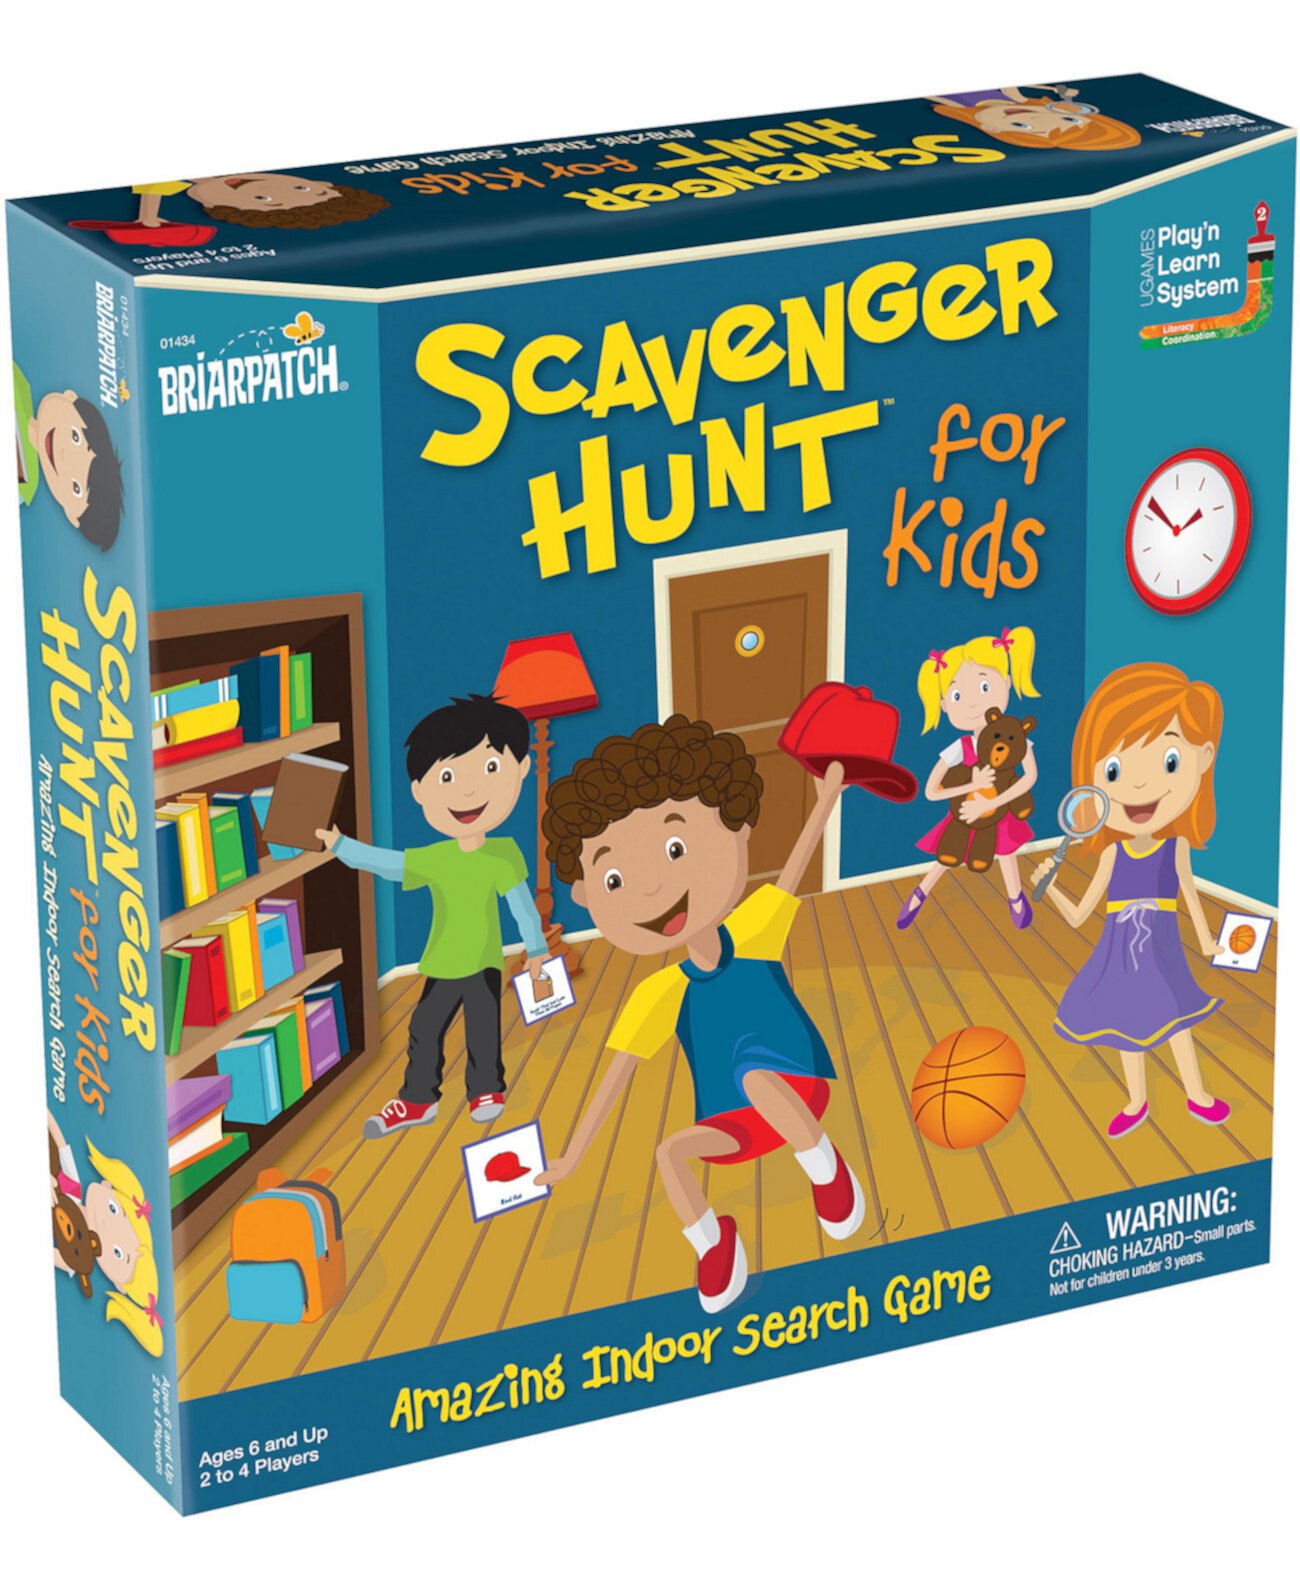 Scavenger Hunt для детей настольная игра Briarpatch